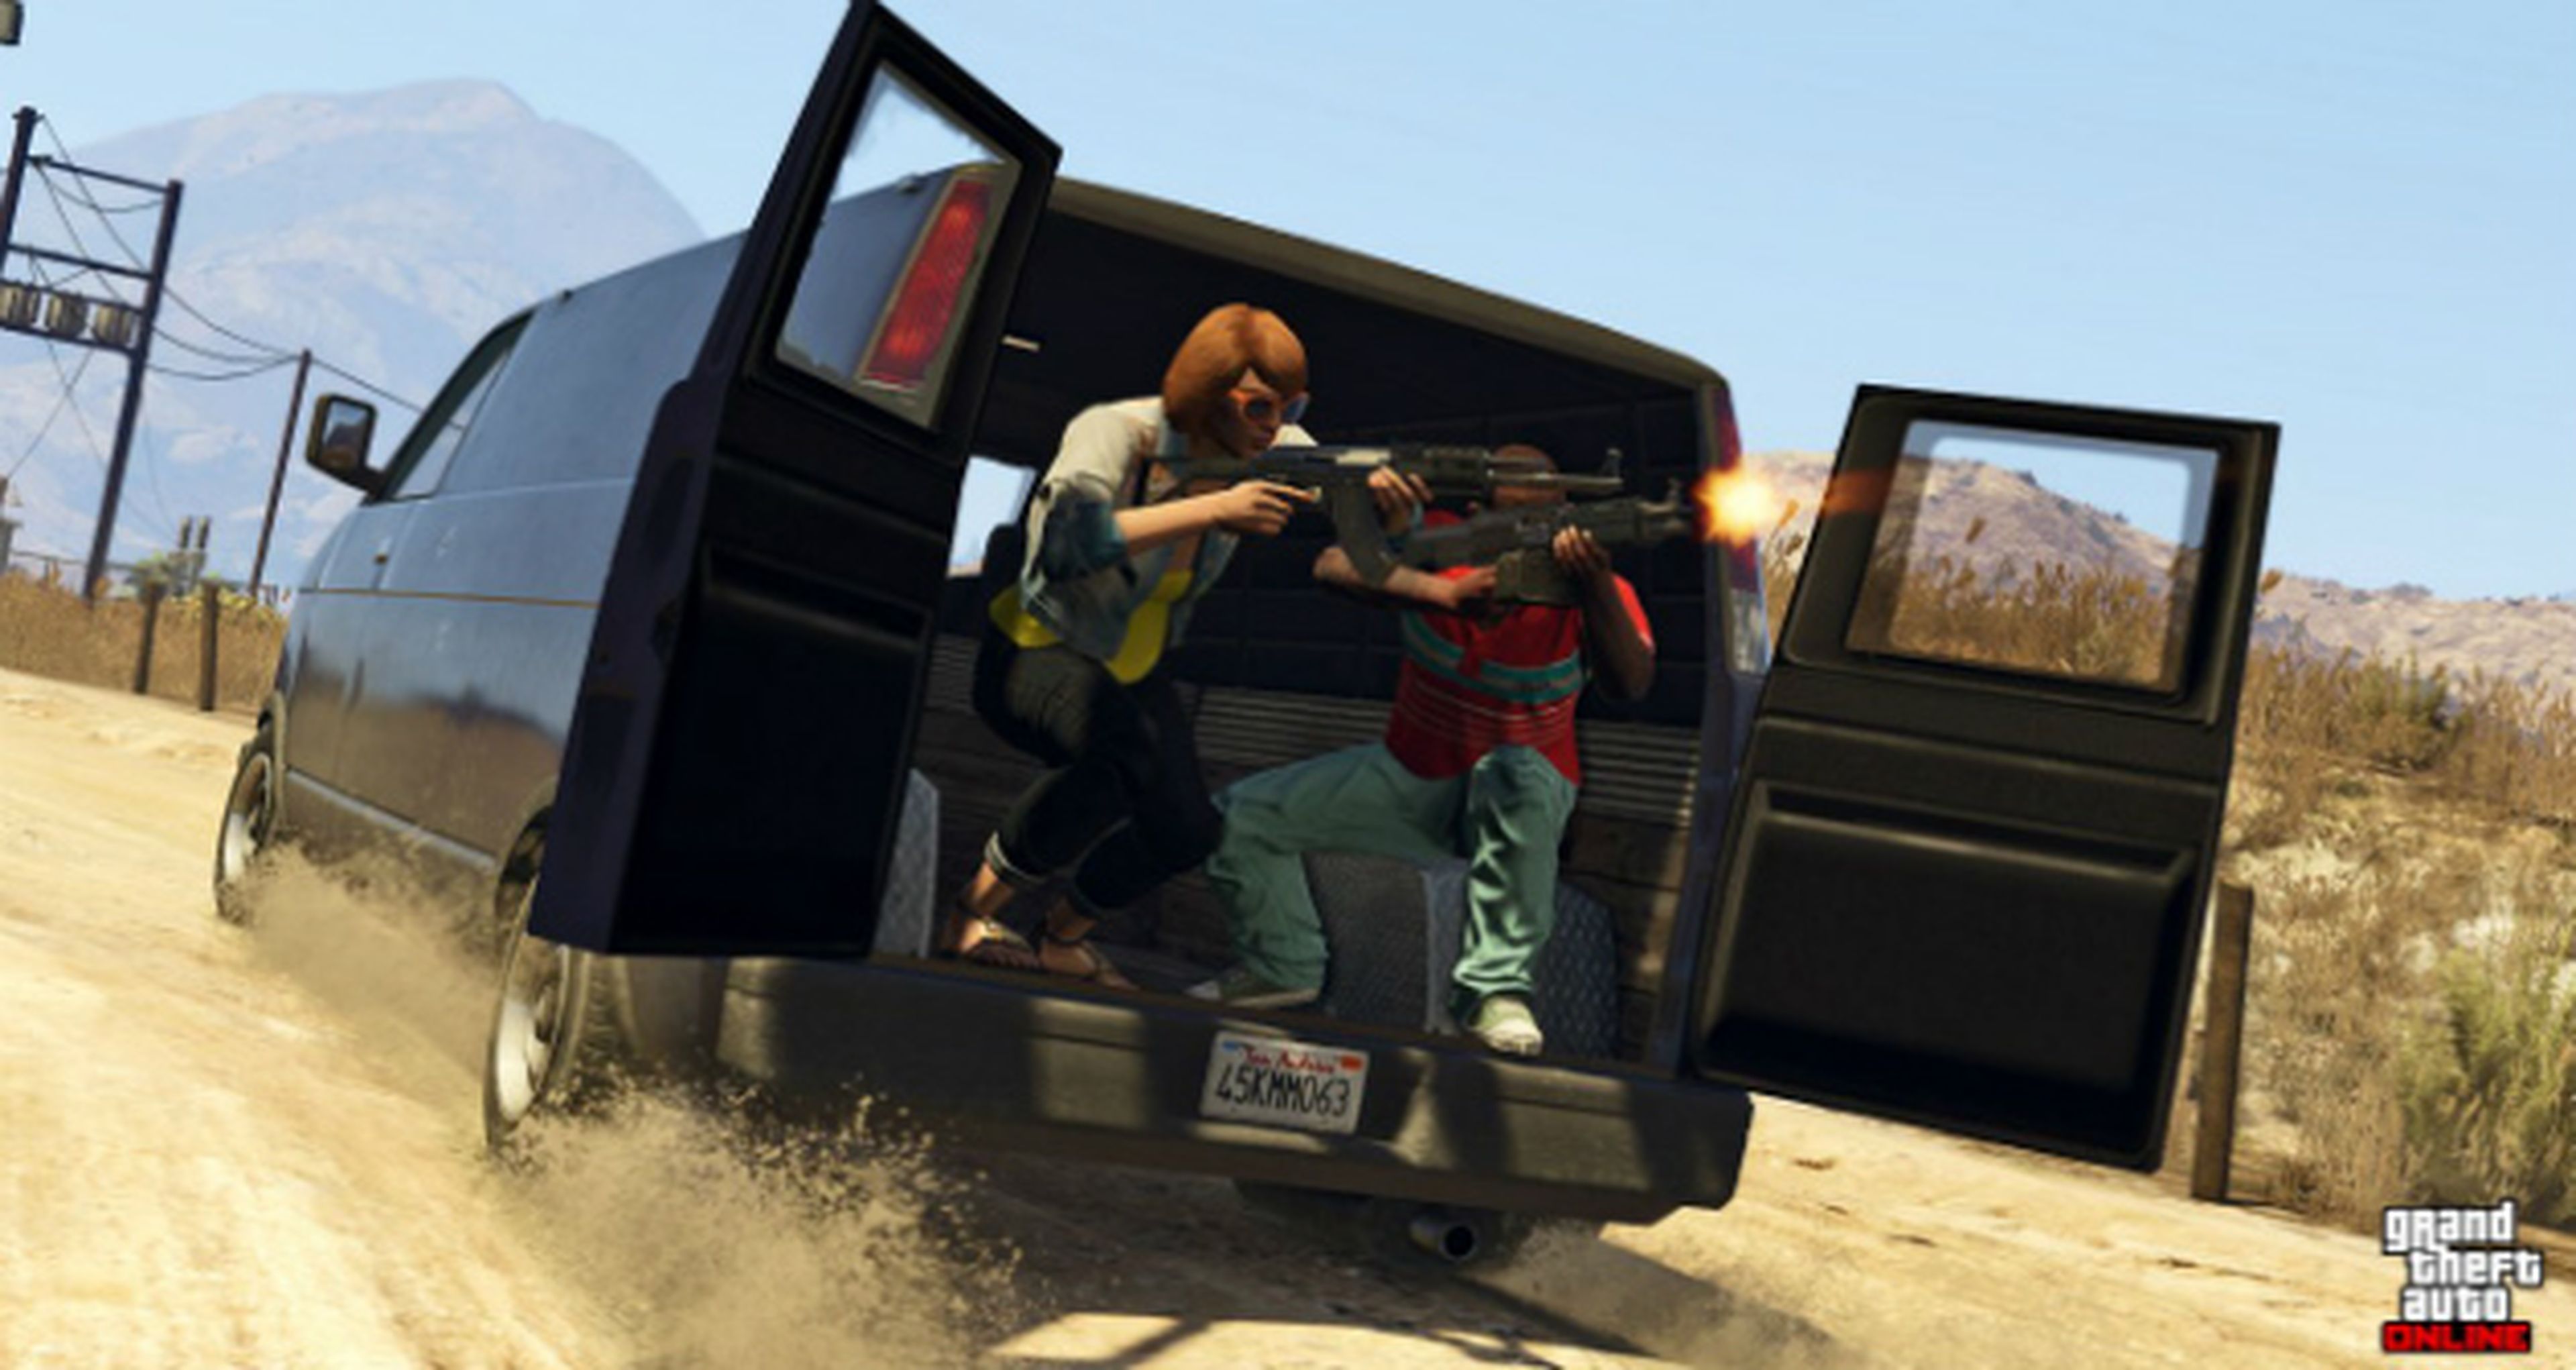 Imágenes de Grand Theft Auto V y Grand Theft Auto Online en PS4 y Xbox